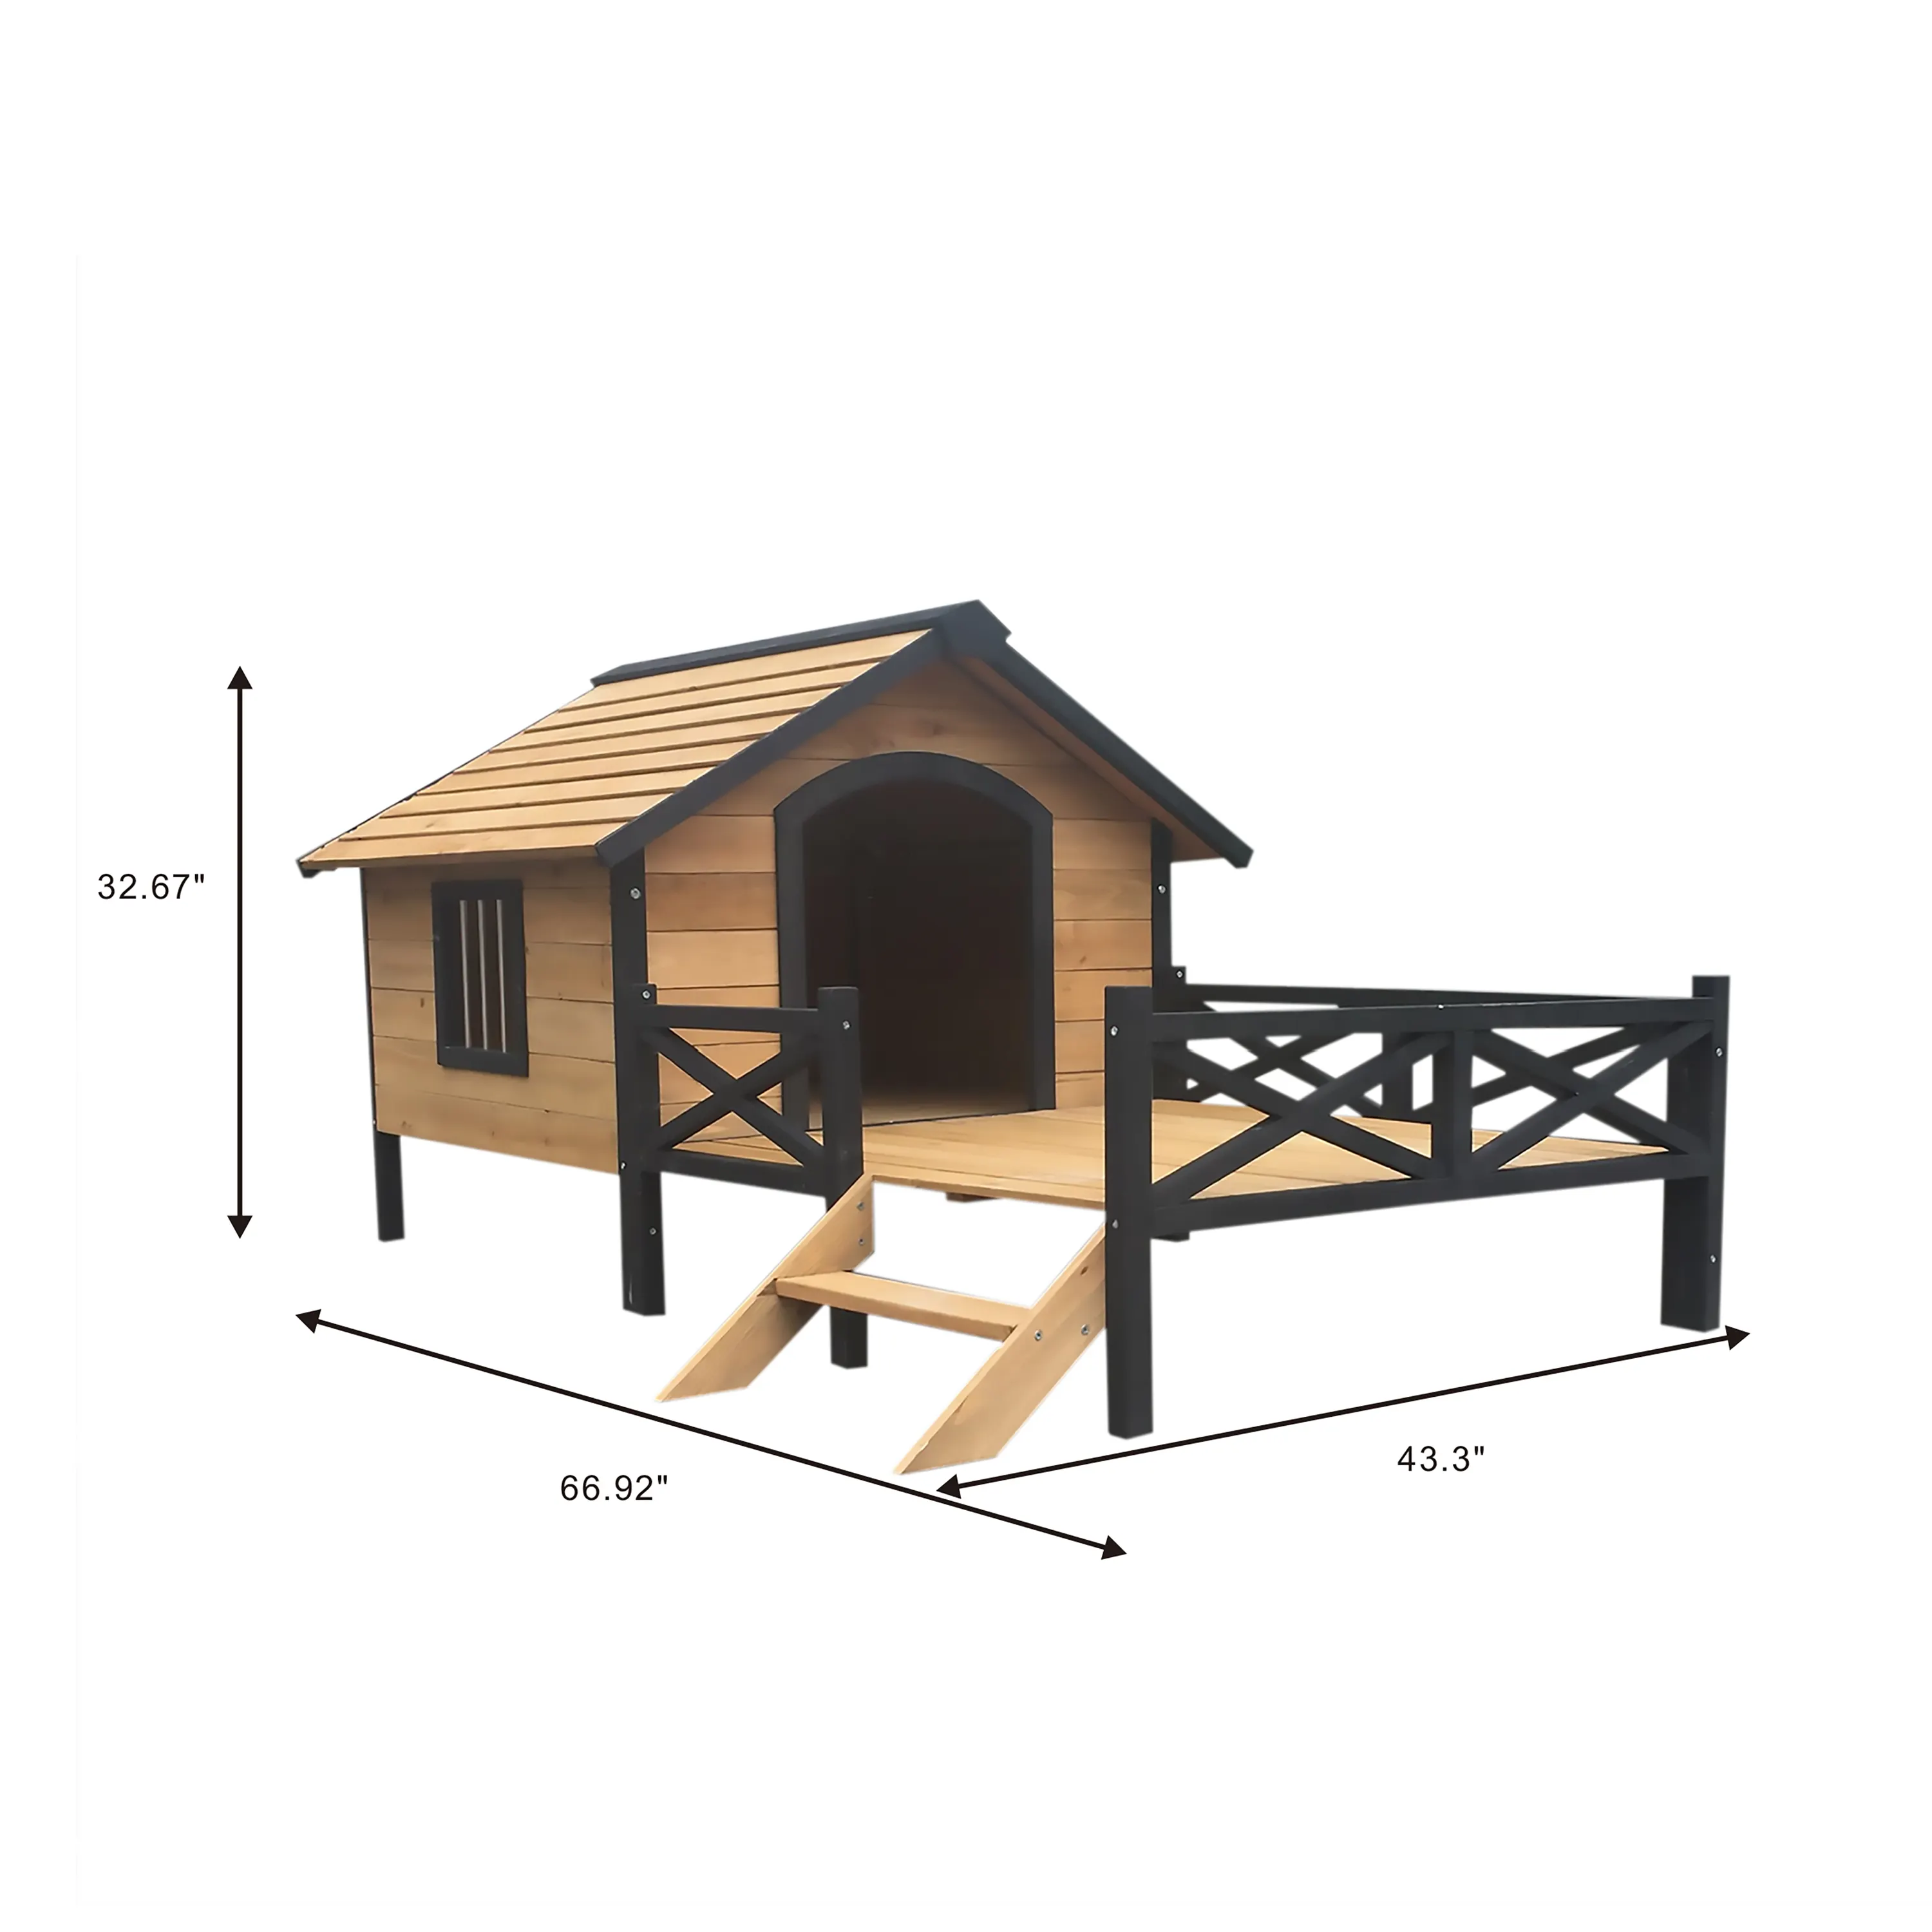 Grande maison pour chiens avec porche pour une grande taille, abri en bois XL surélevé pour chiens